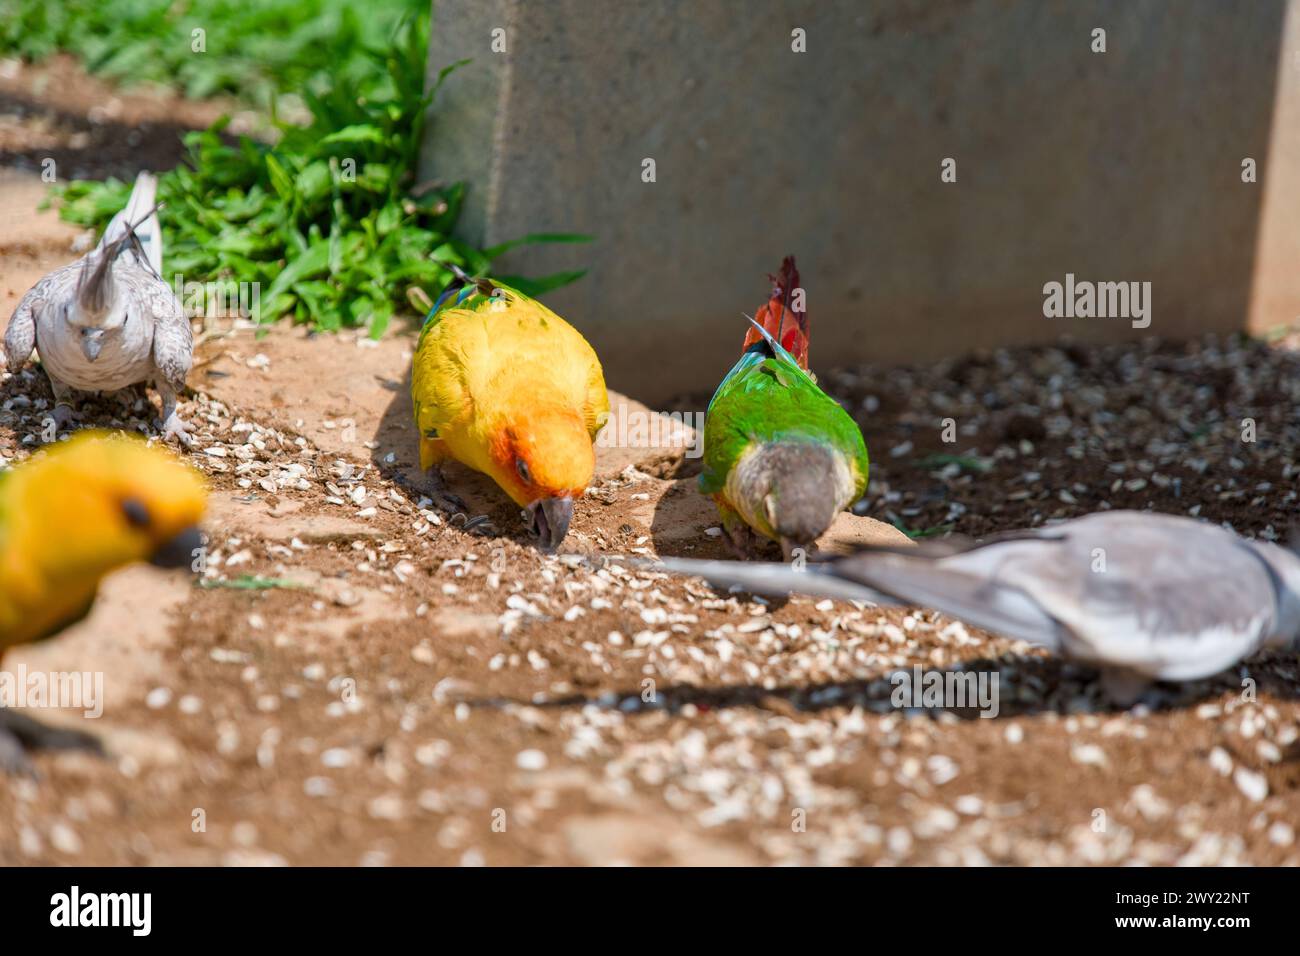 Eine lebhafte Szene mit bunten Papageien, die eine köstliche Mahlzeit auf dem Boden genießen. Stockfoto